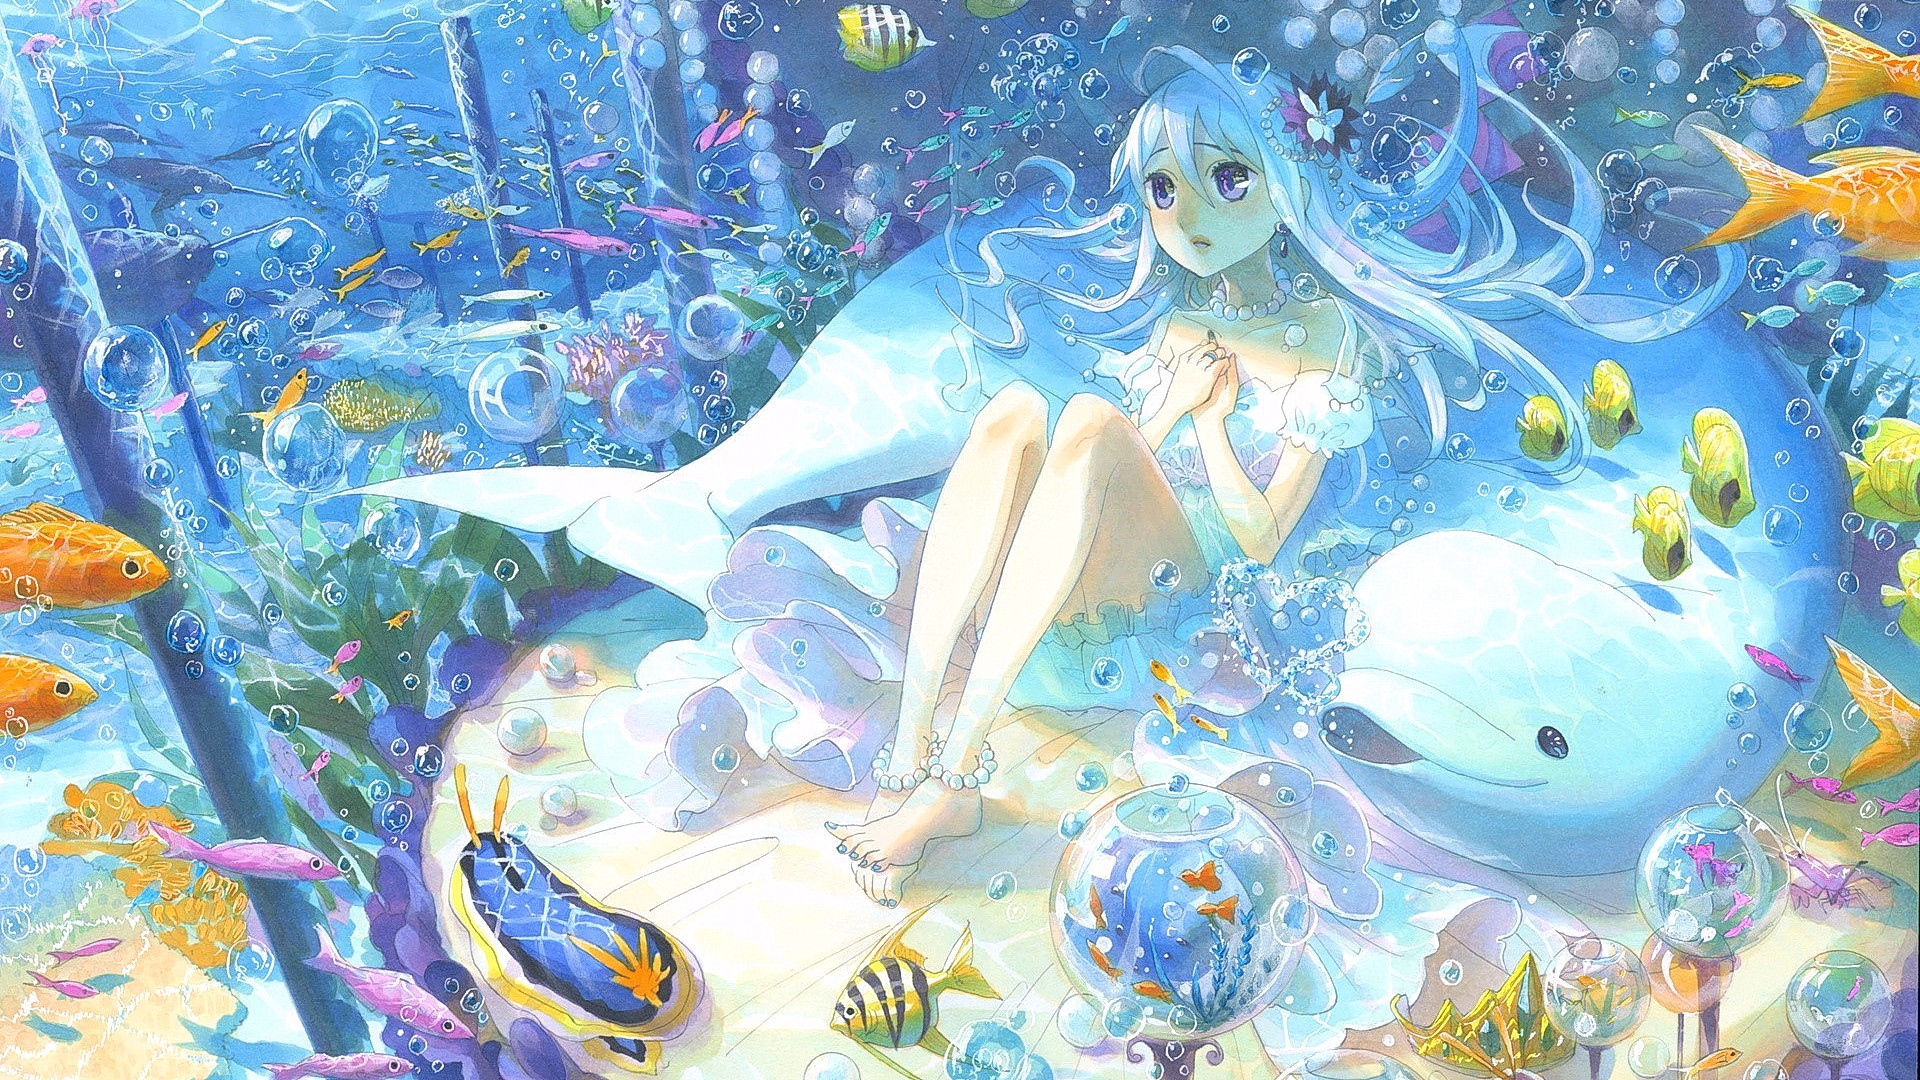 Cô gái Anime dưới nước: Cảm giác bị cuốn hút bởi vẻ đẹp của một cô gái Anime trong khung cảnh dưới nước là điều khó tả. Những tông màu pastel và nét vẽ tinh tế đã tạo ra một bức tranh tuyệt đẹp, đầy cảm hứng và mong muốn được chìm đắm trong không khí thơ mộng và lãng mạn. Hãy xem ngay bức ảnh này để cảm nhận được sự quyến rũ đó! 